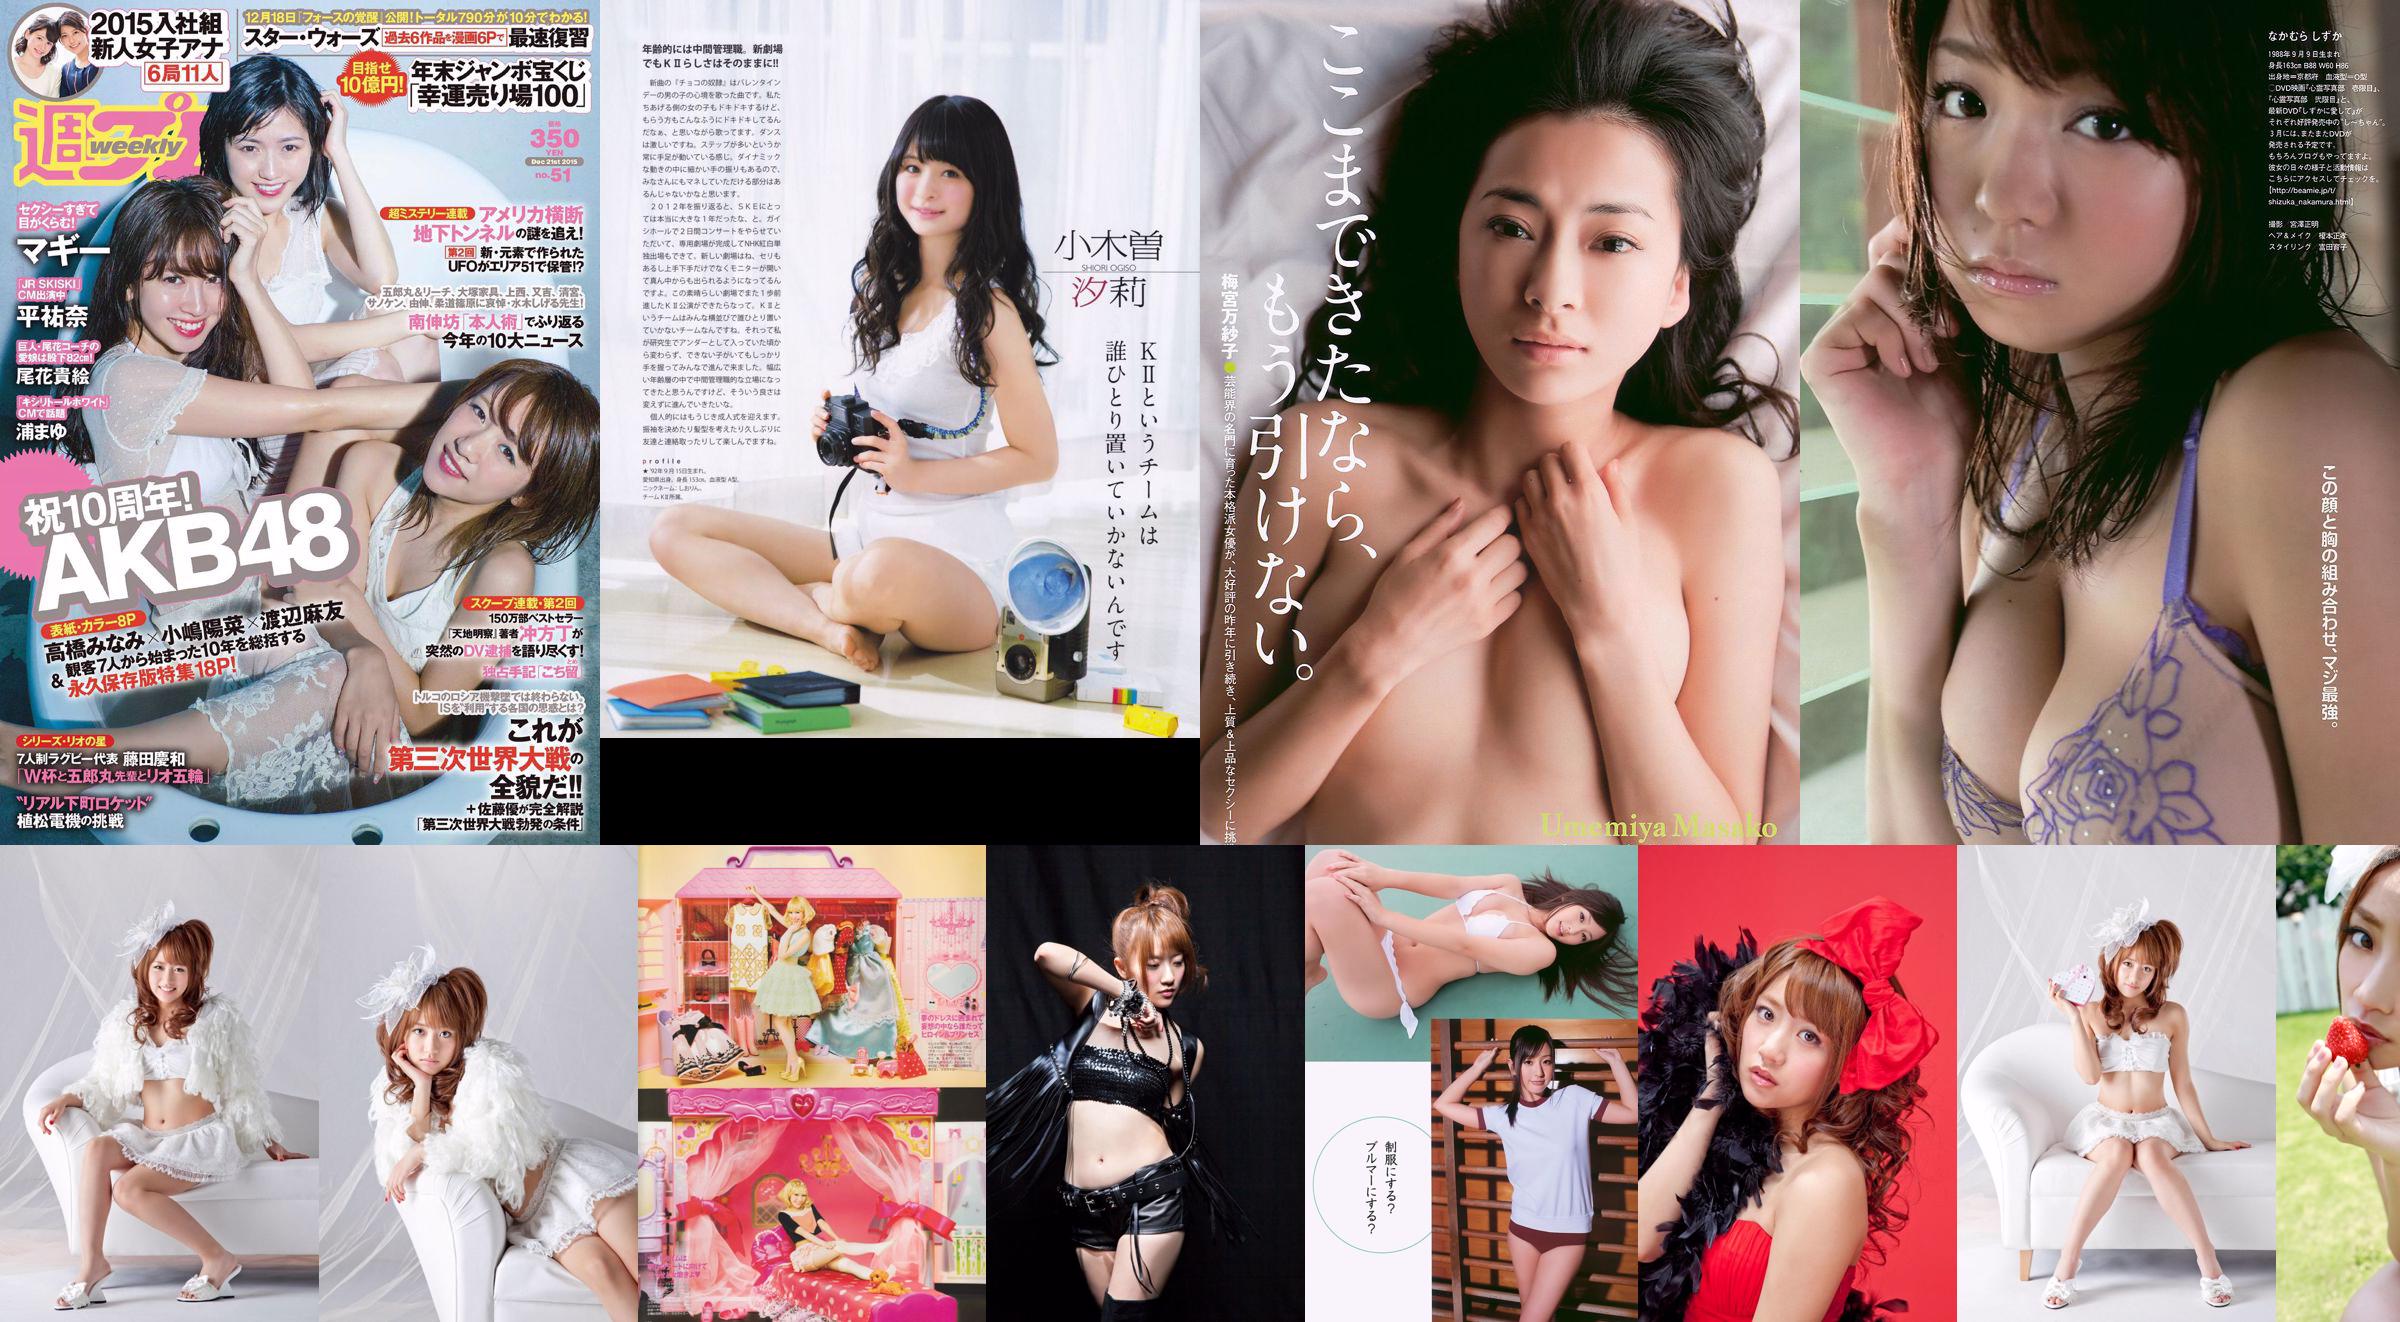 [Bomb Magazine] 2013 No.02 Takahashi Minami Matsui Jurina Kasai Tomomi Kitahara Riehi Photo magazine No.32db90 Page 1